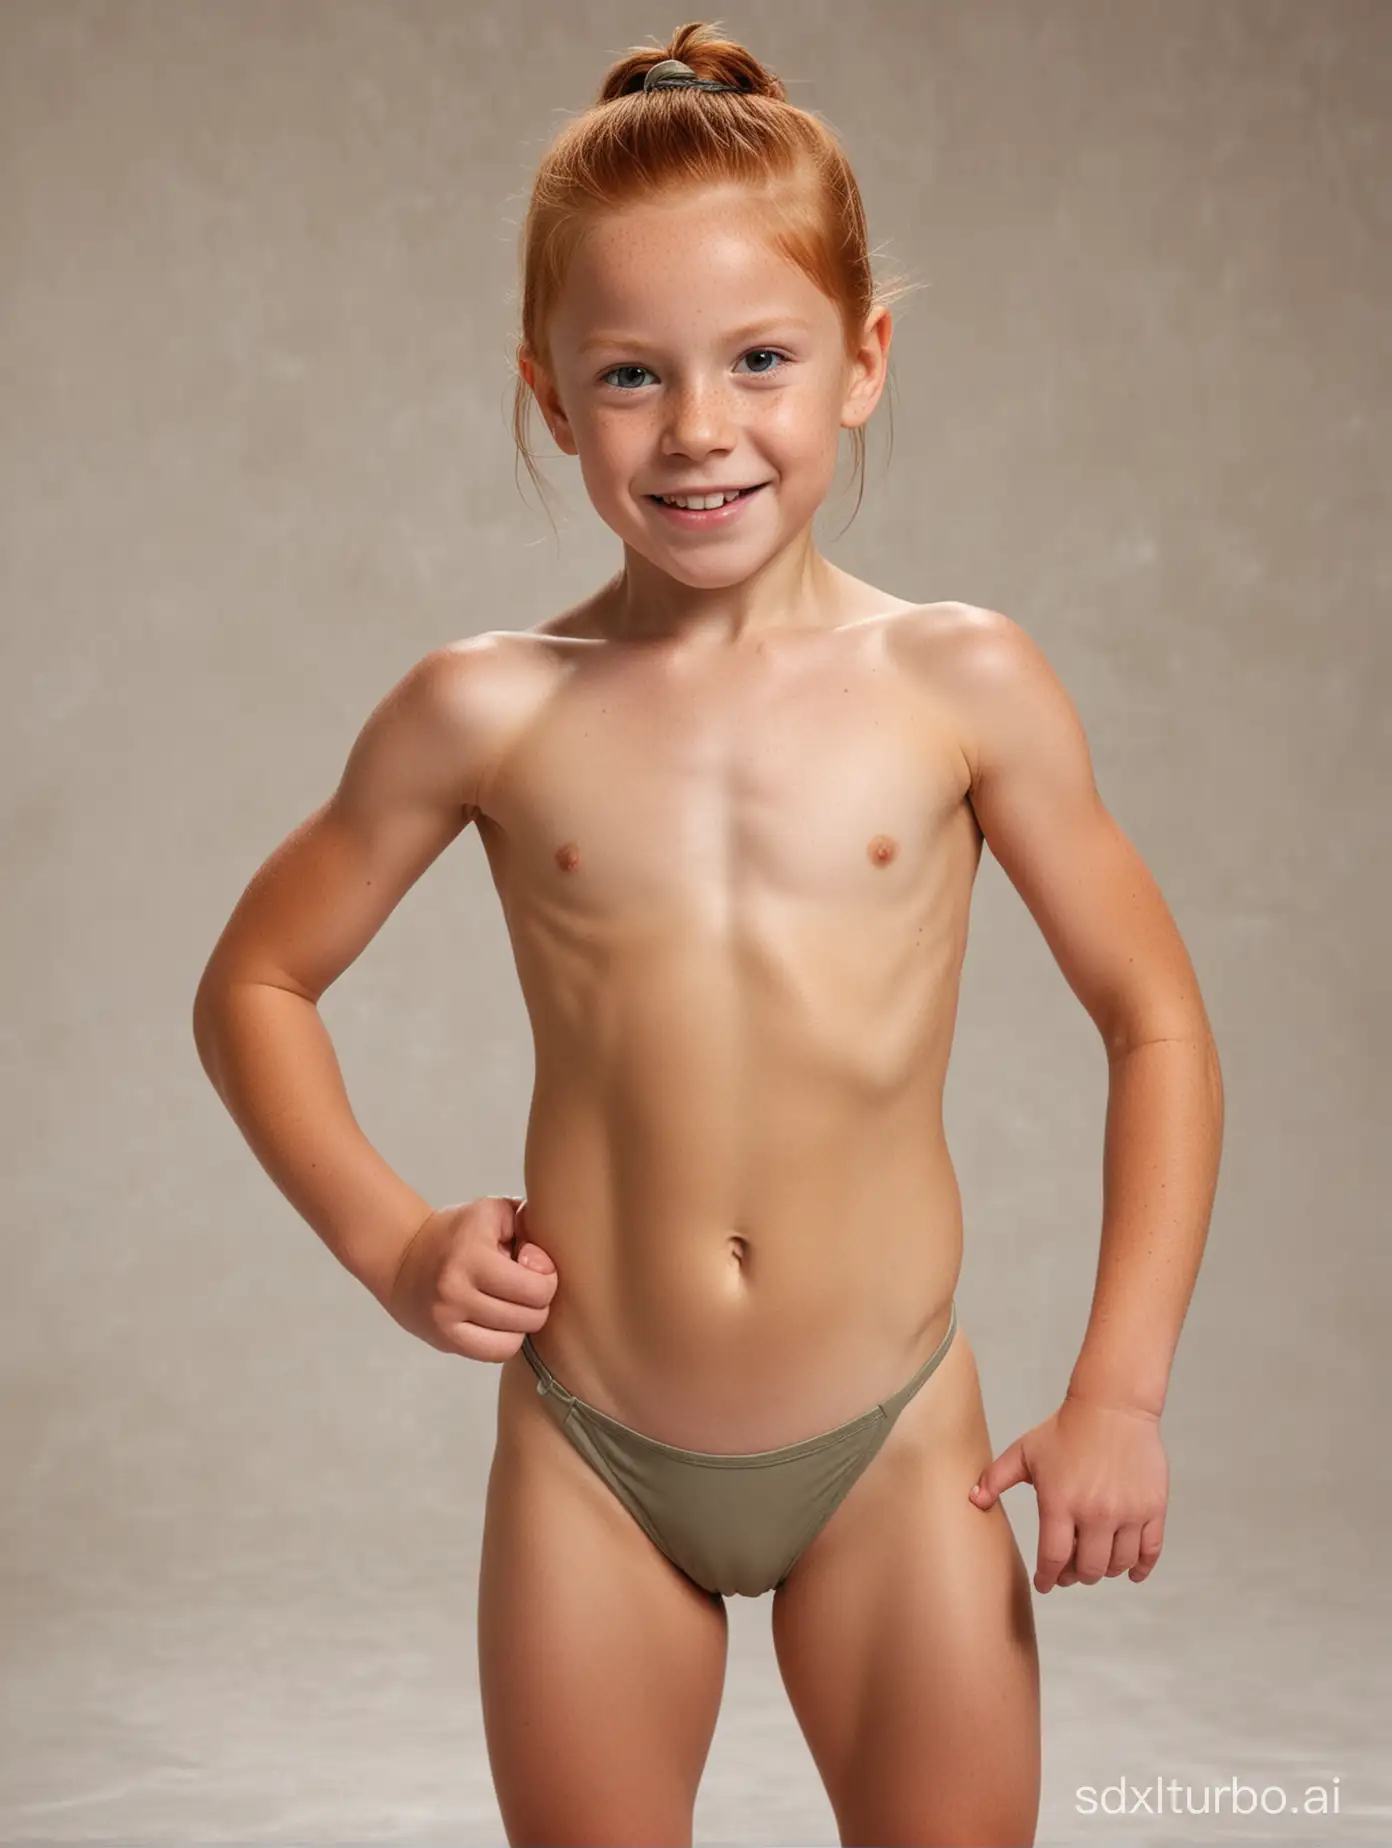 8 years old ginger hari girl, very muscular abs, string bathingsuit